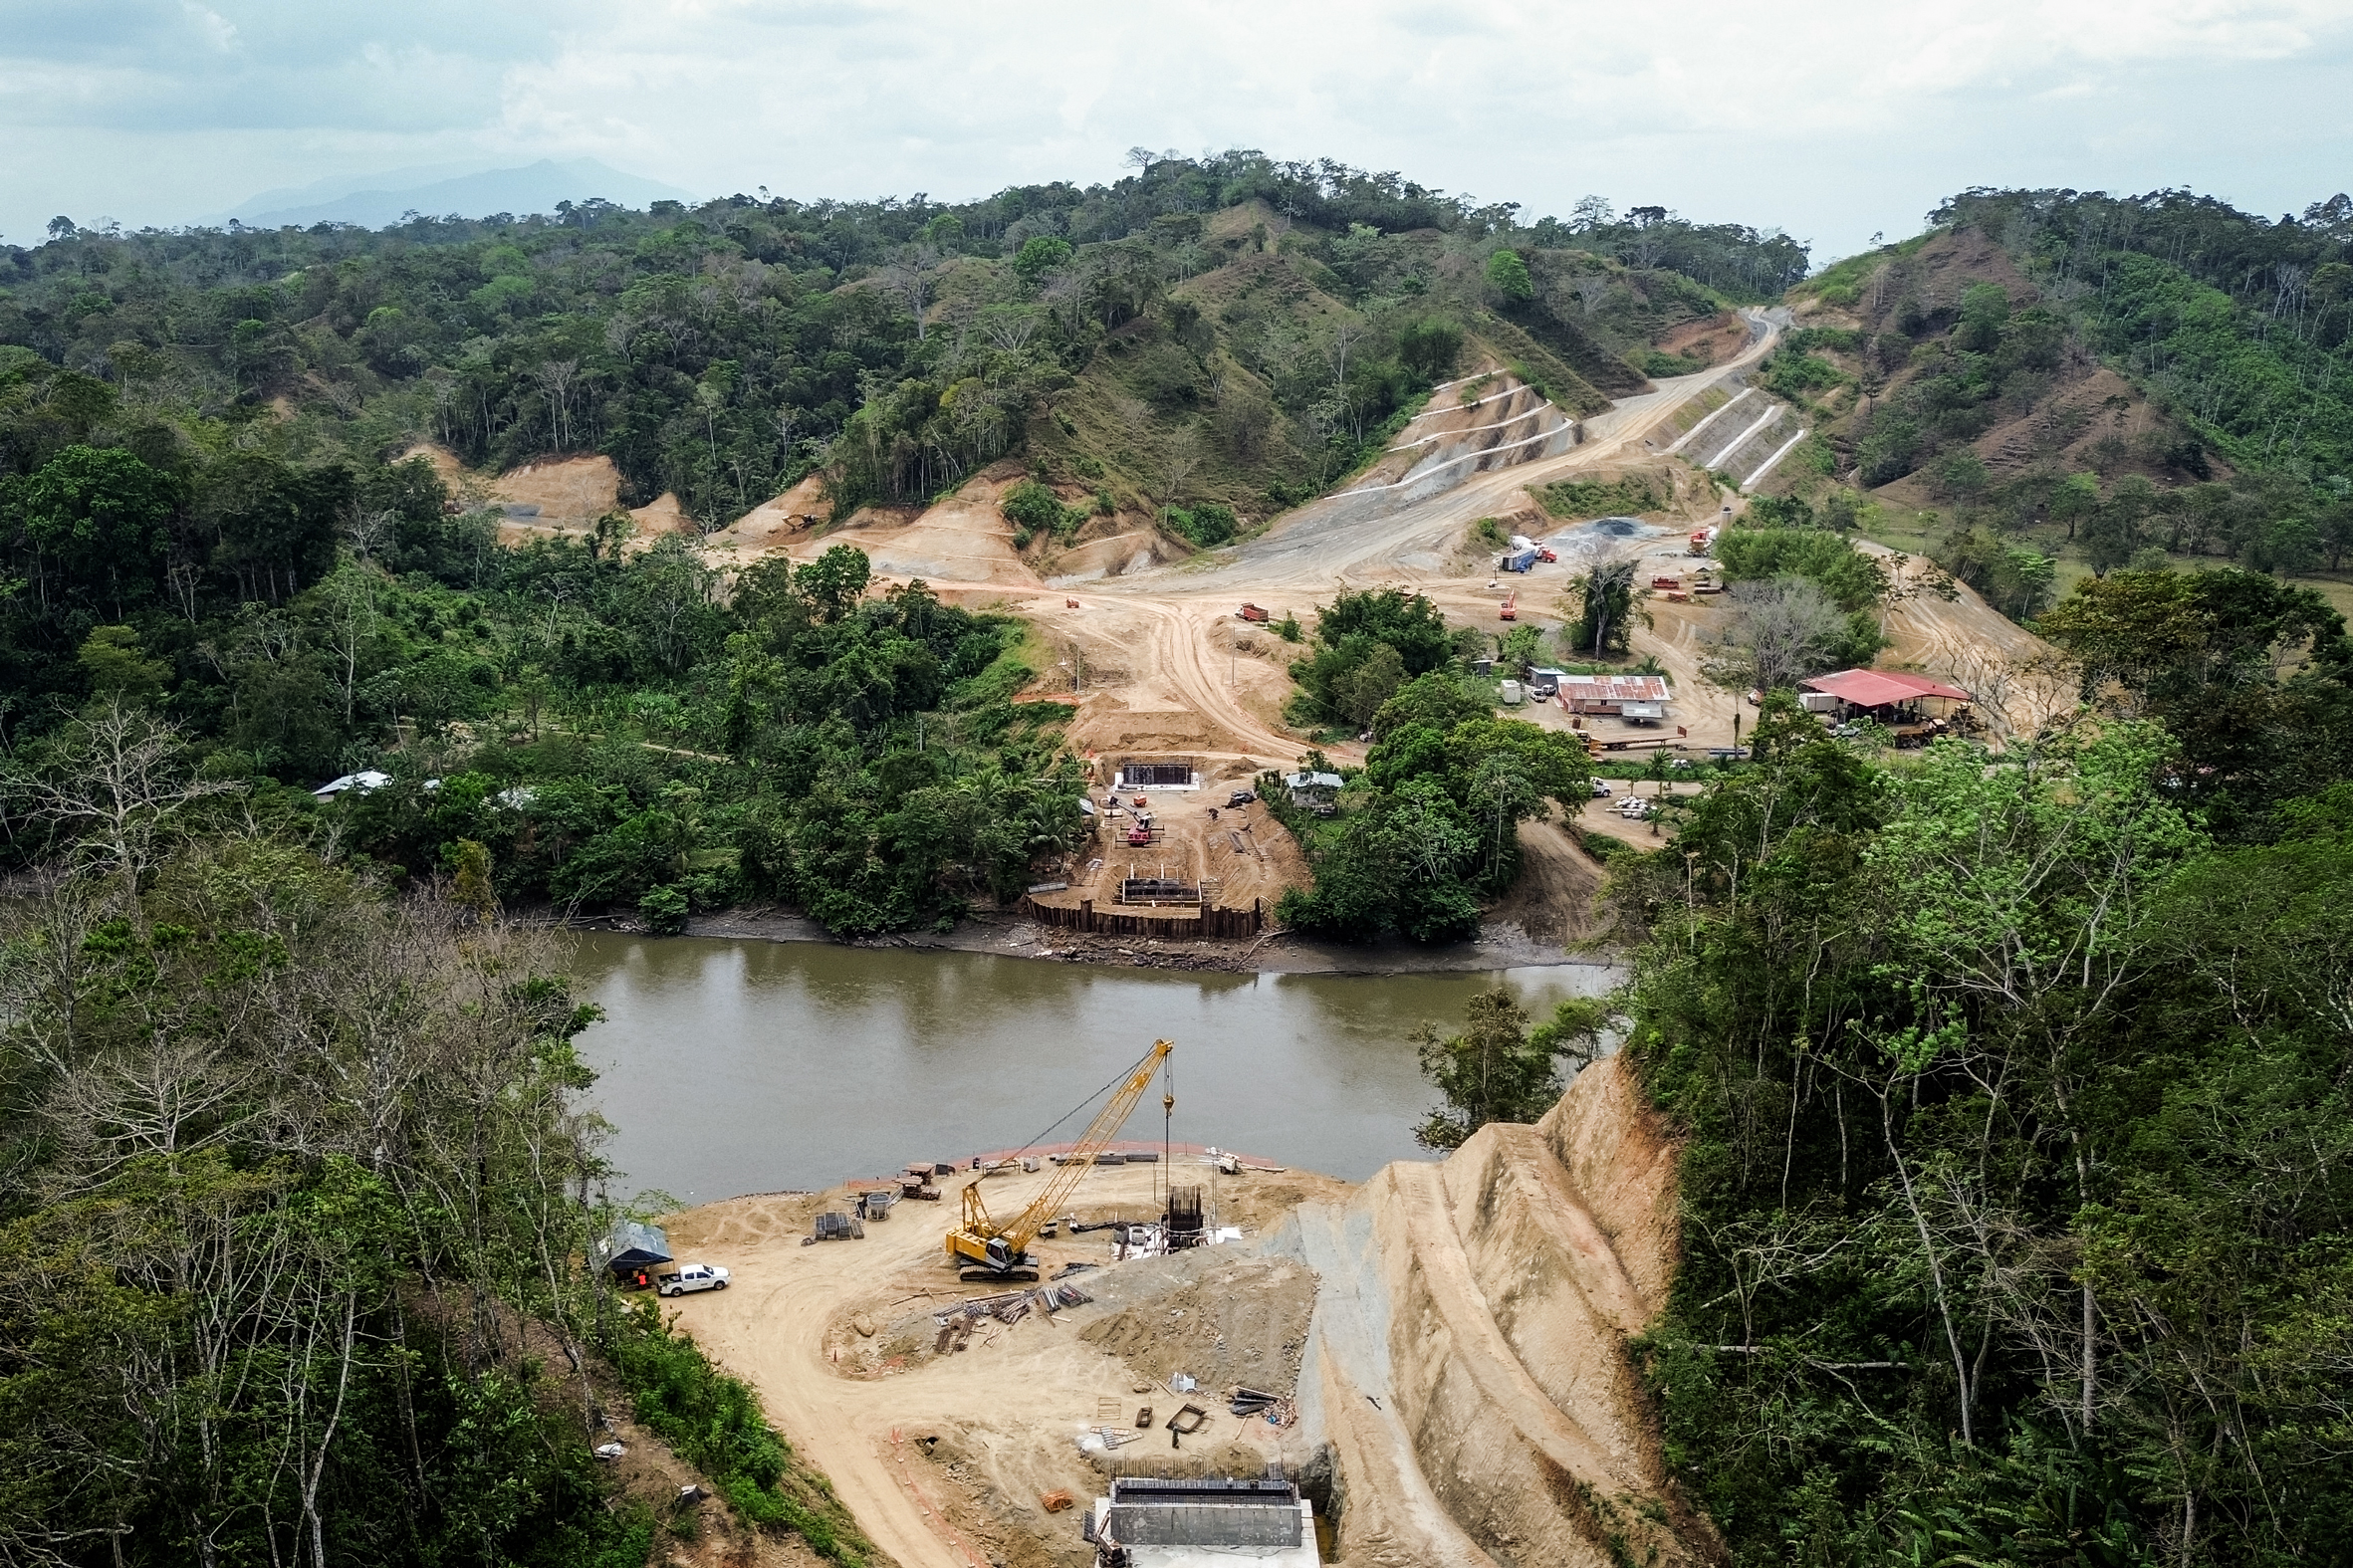 Các công nhân đang xây dựng các trụ chống cho cây cầu bắc qua sông Chucunaque tại Yaviza, Panama, hôm 20/02/2024. Một công nhân tại công trường của công ty xây dựng Cusa cho biết dự án sẽ lấn bốn dặm đường vào rừng Darien với chi phí 42 triệu USD và bao gồm một cây cầu thứ hai bắc qua sông Tuira. (Ảnh: Bobby Sanchez cho The Epoch Times)